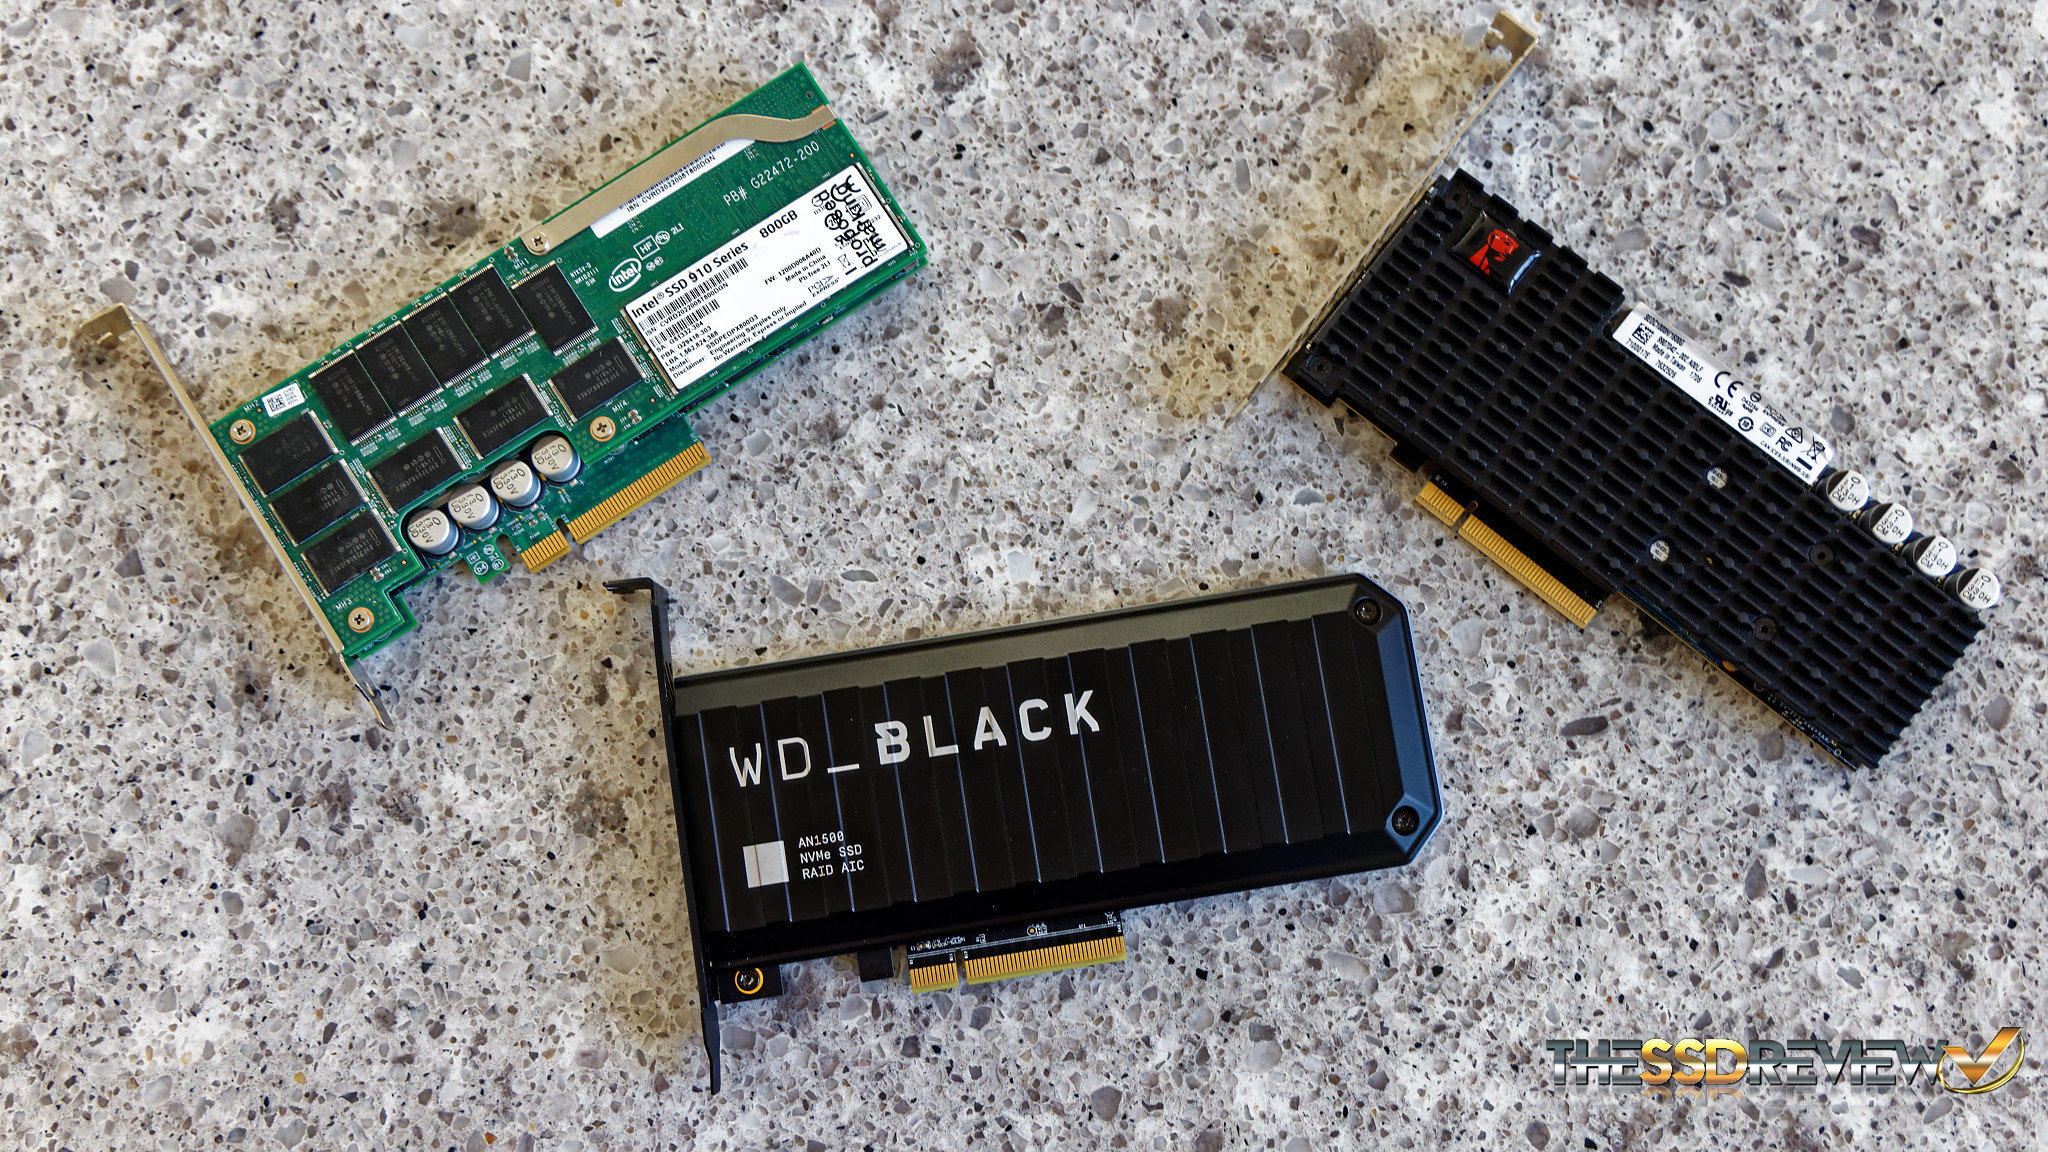 WD Black AN1500 2TB RGB NVMe SSD RAID Card Review 65GBs 5Year